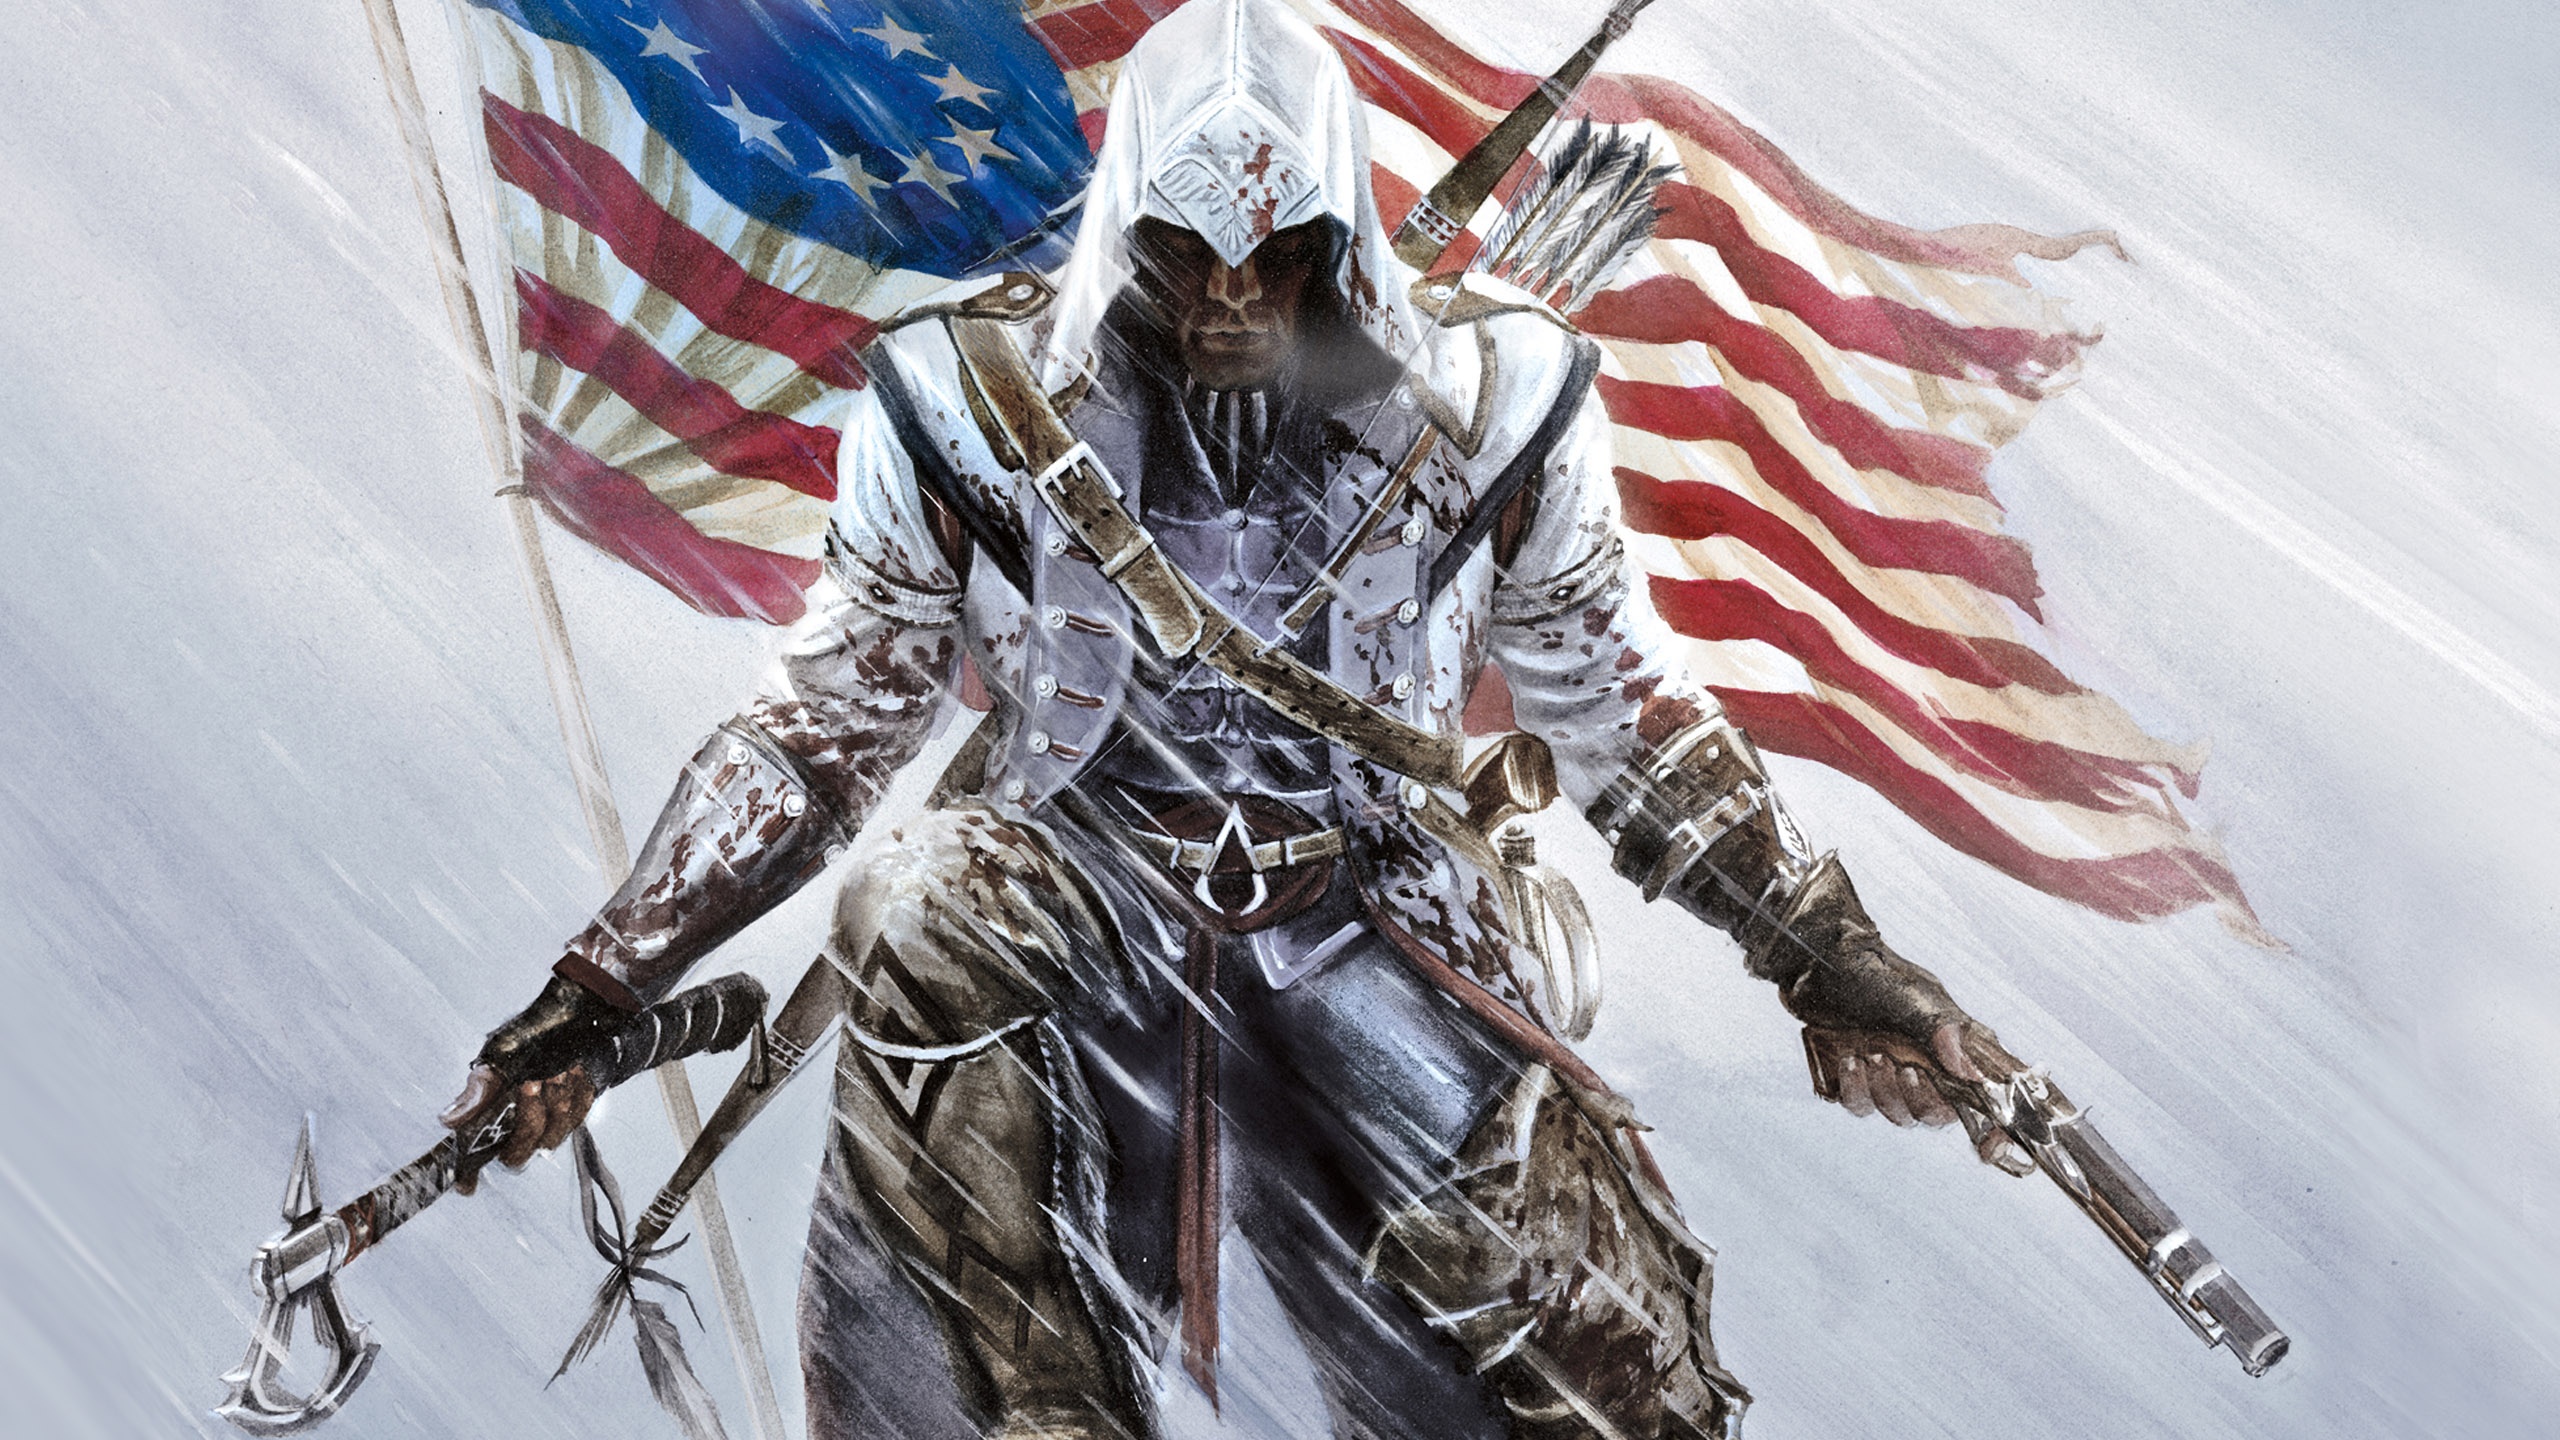 50 Assassin Creed 2 Wallpaper  WallpaperSafari